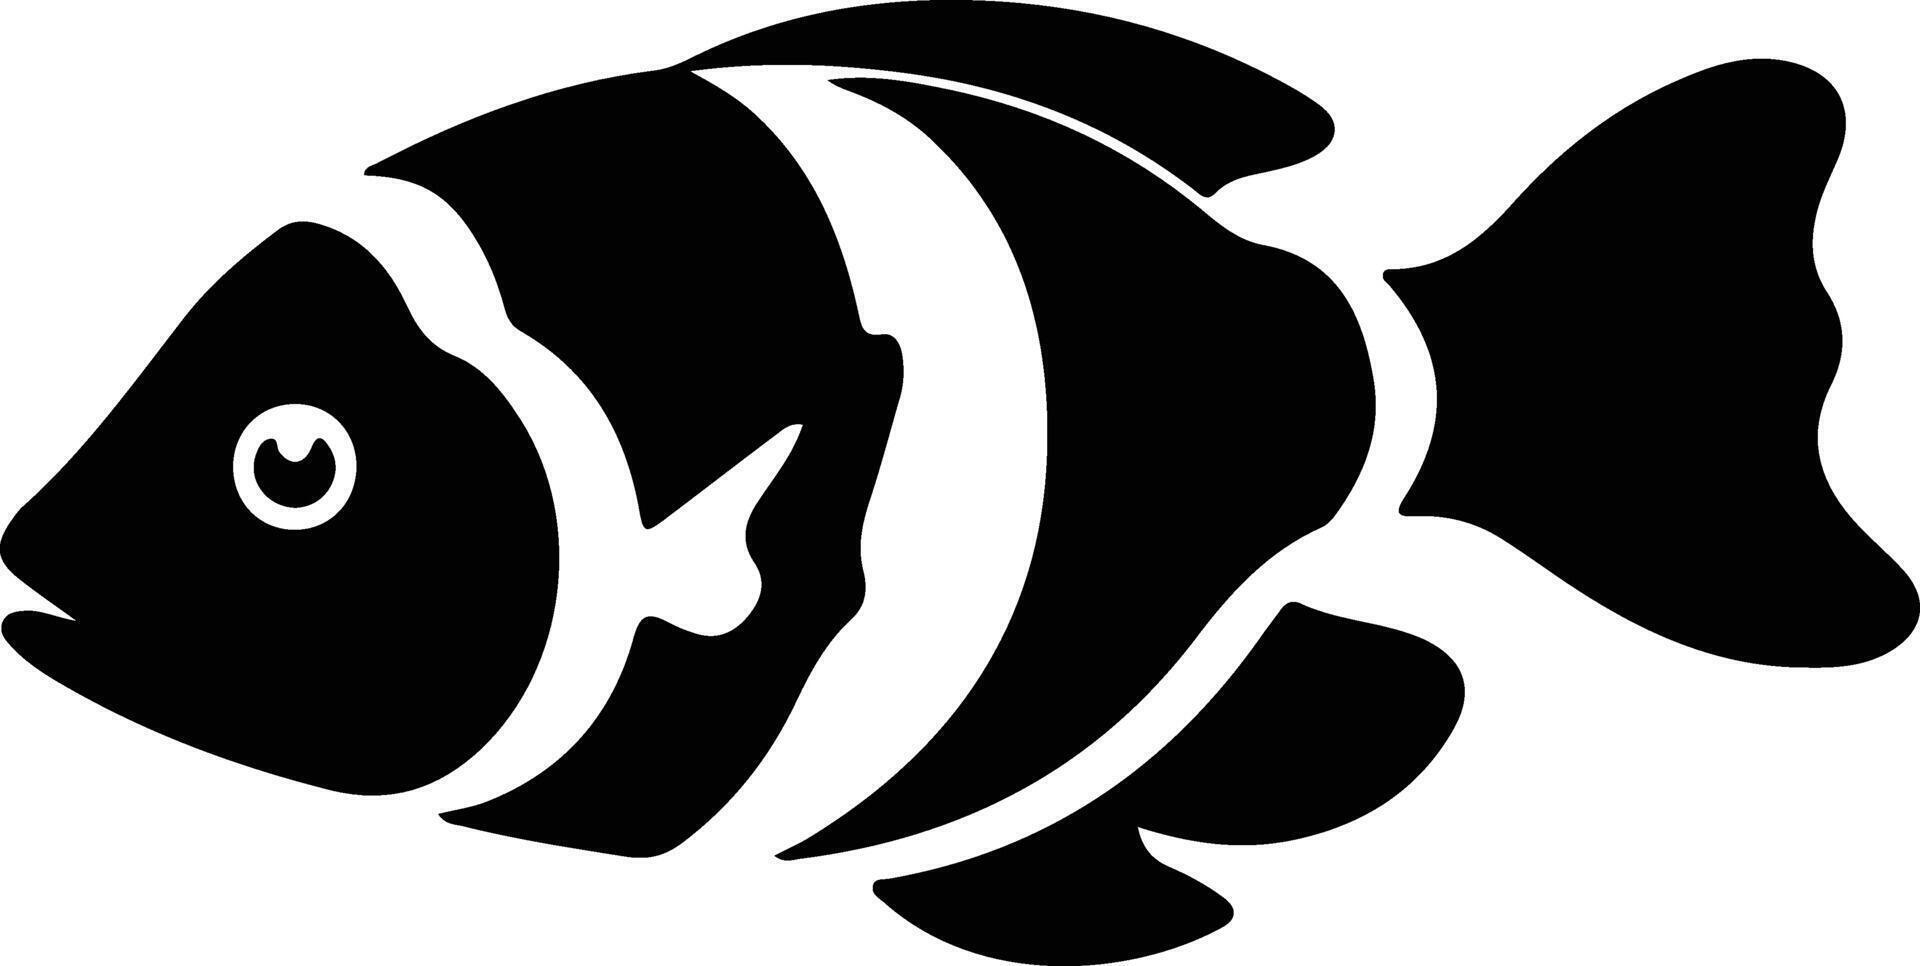 pez payaso negro silueta vector